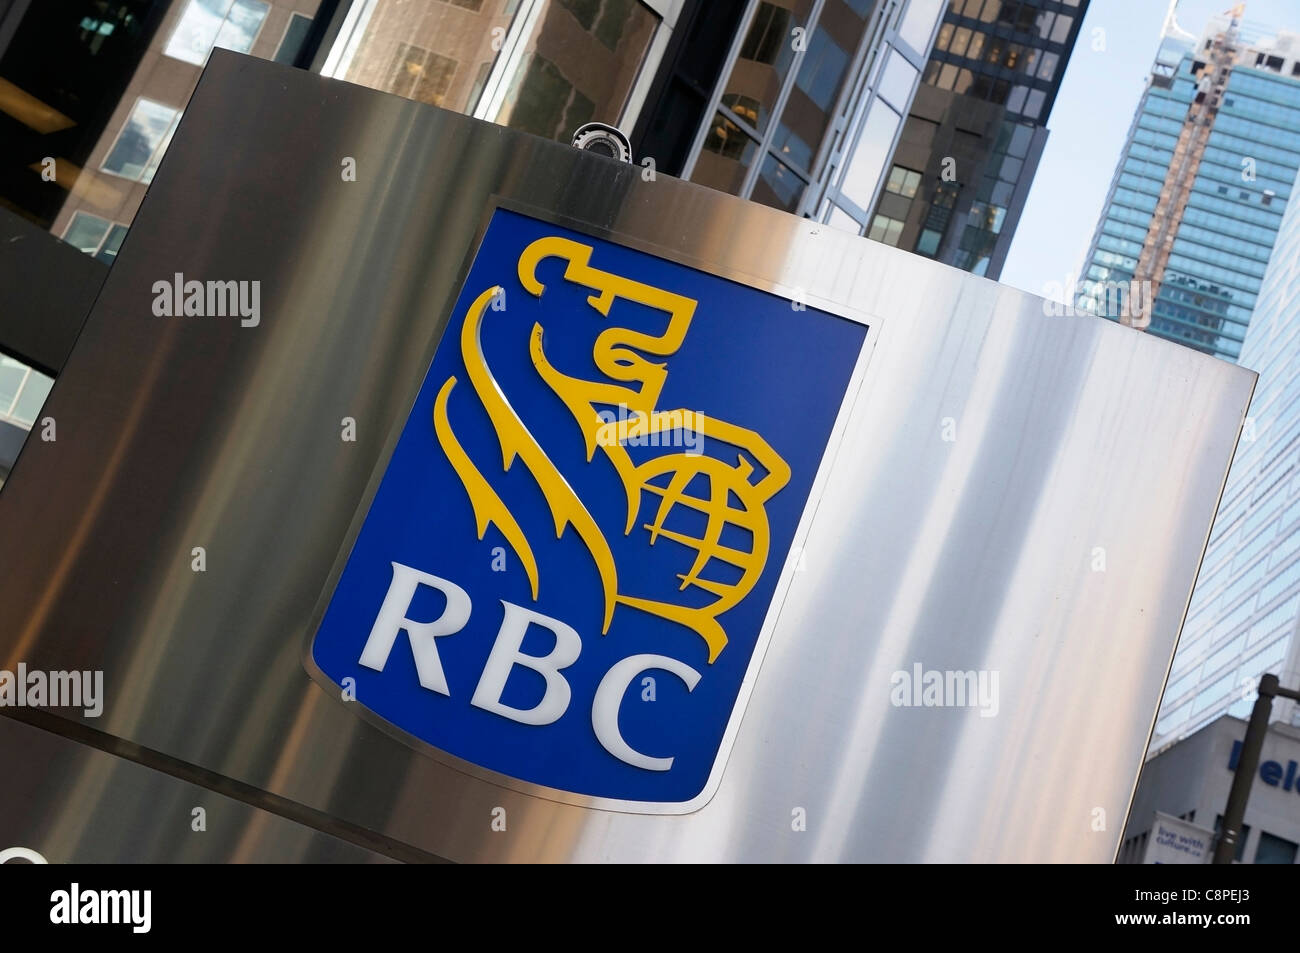 RBC, Royal Bank of Canada Stock Photo